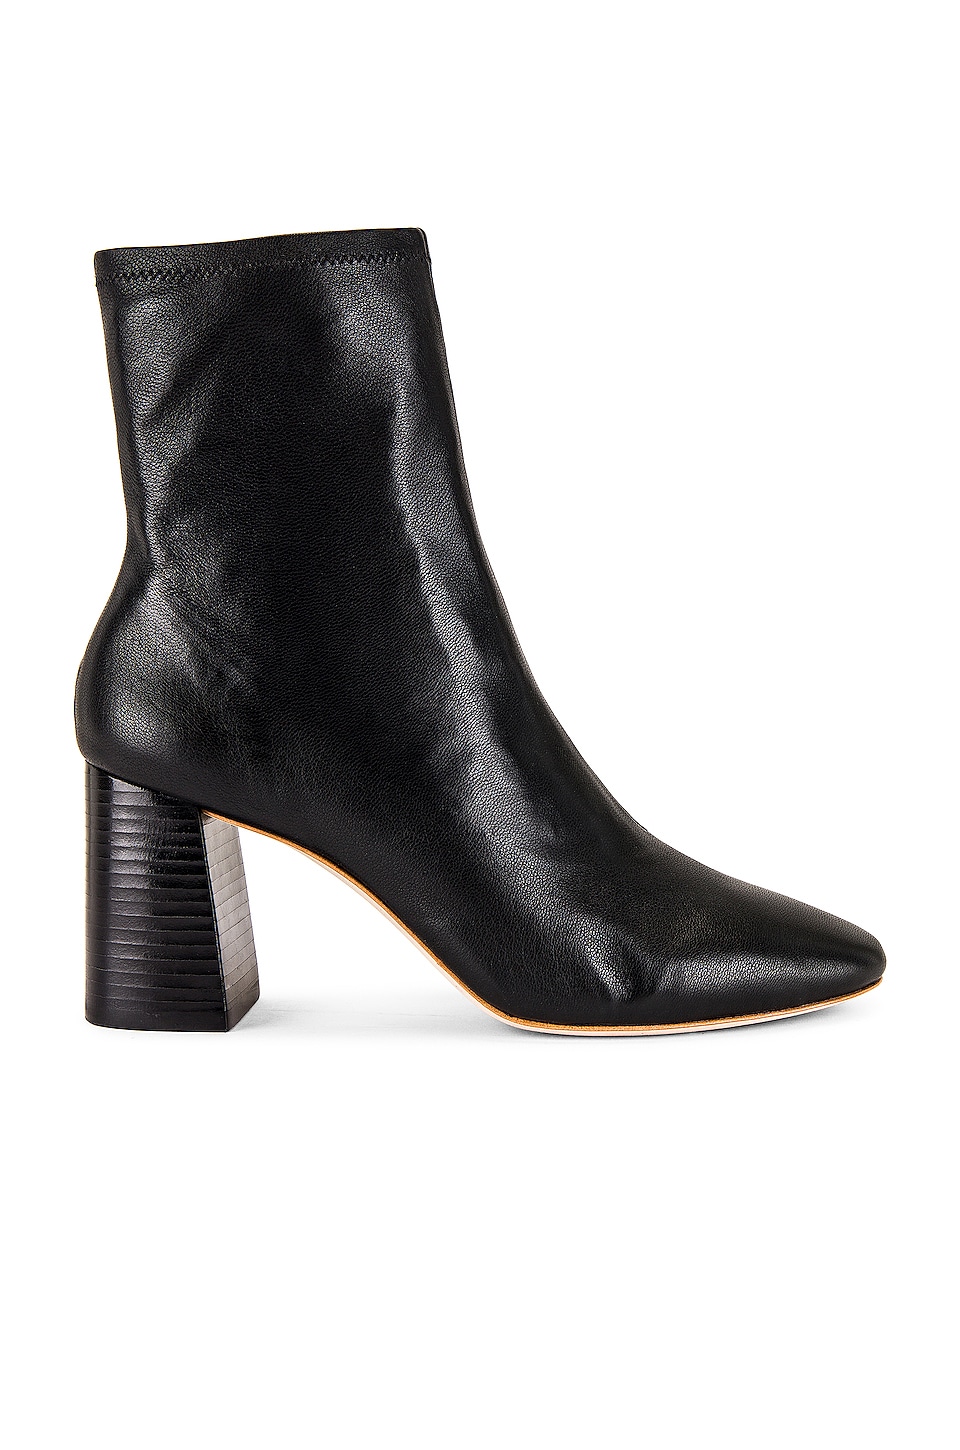 Loeffler Randall Elise Ankle Boot in Black | REVOLVE